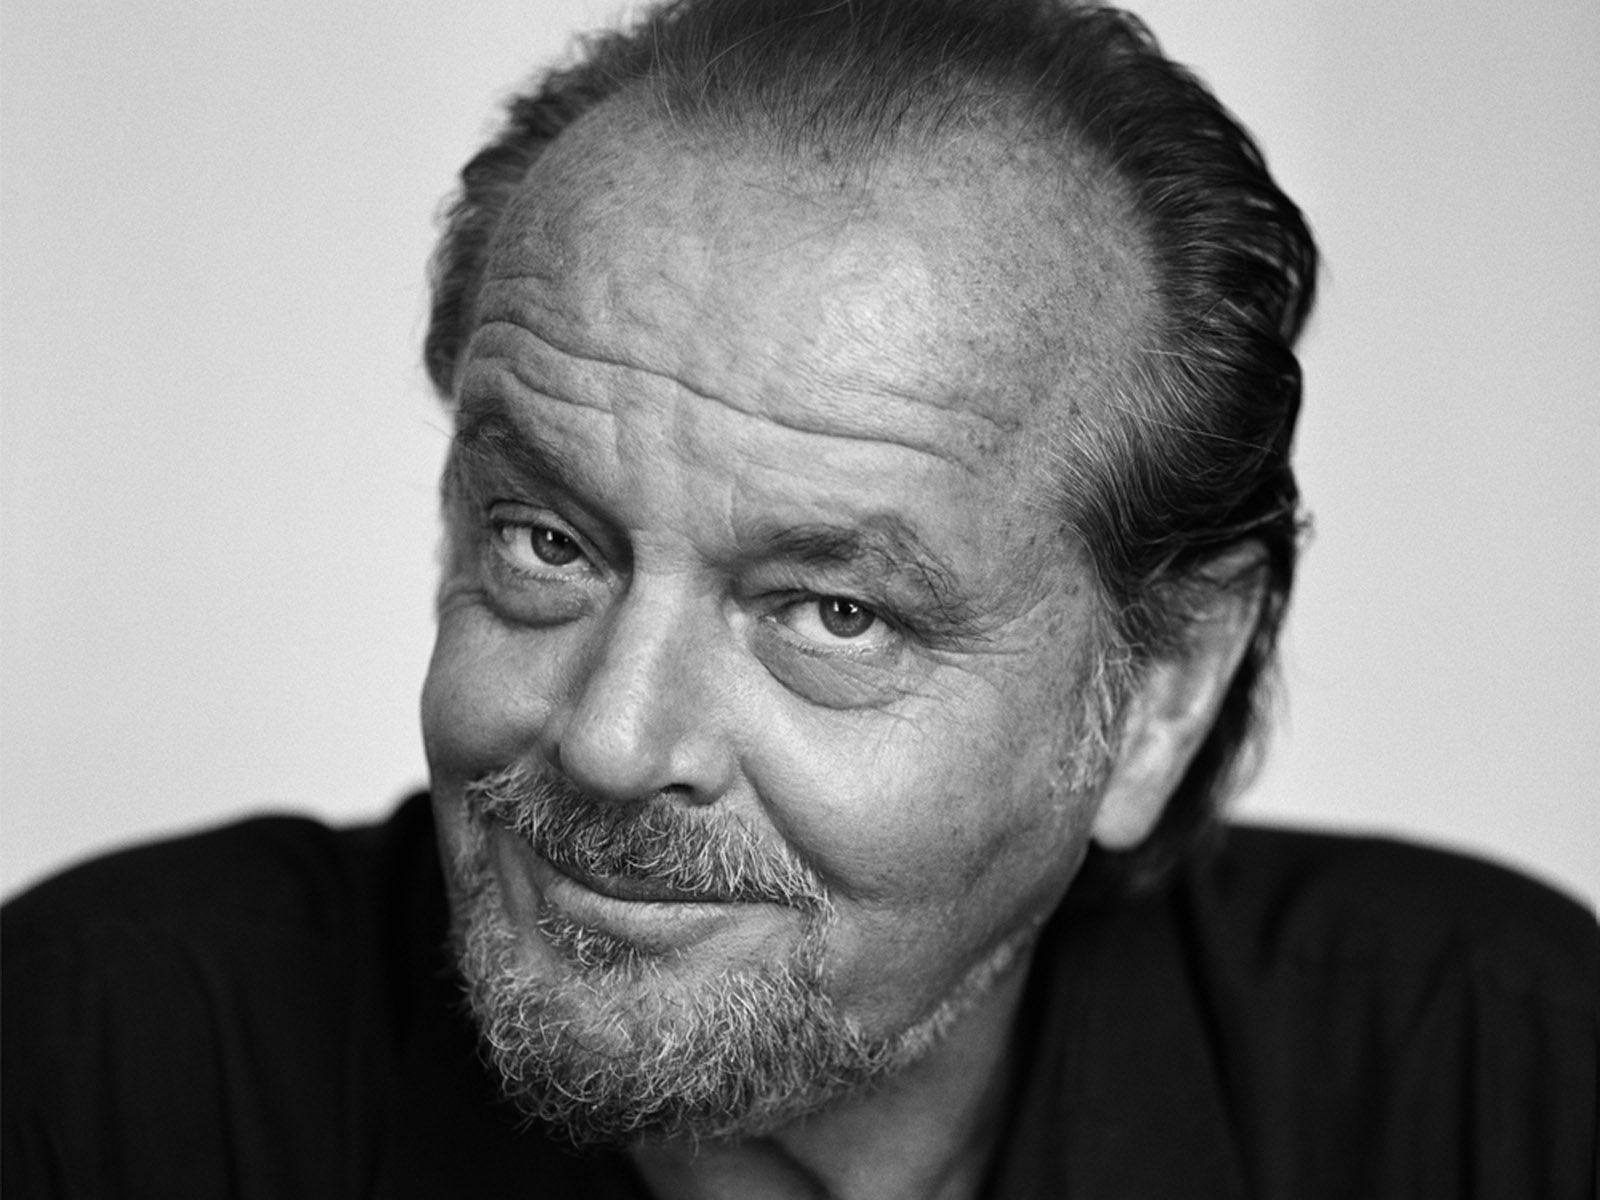 El señor Jack Nicholson vivió engañado